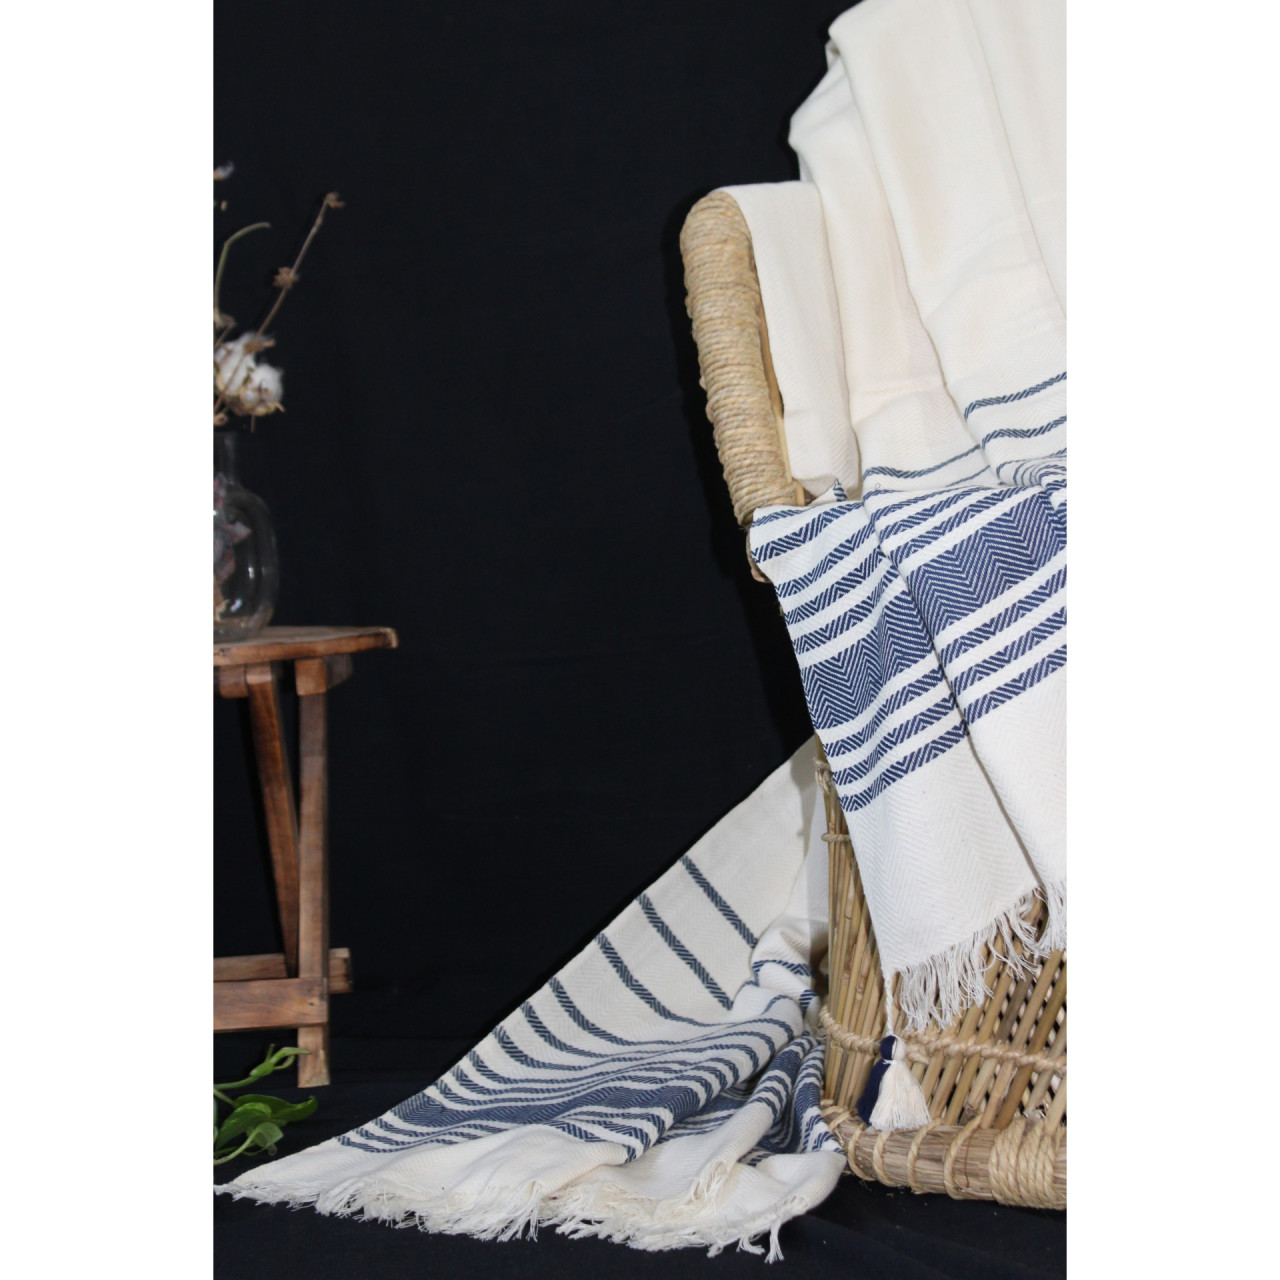 (1431) Cotton and khadi  Azo-free dyed throw from Bihar - White, indigo, stripes, textured, pompoms